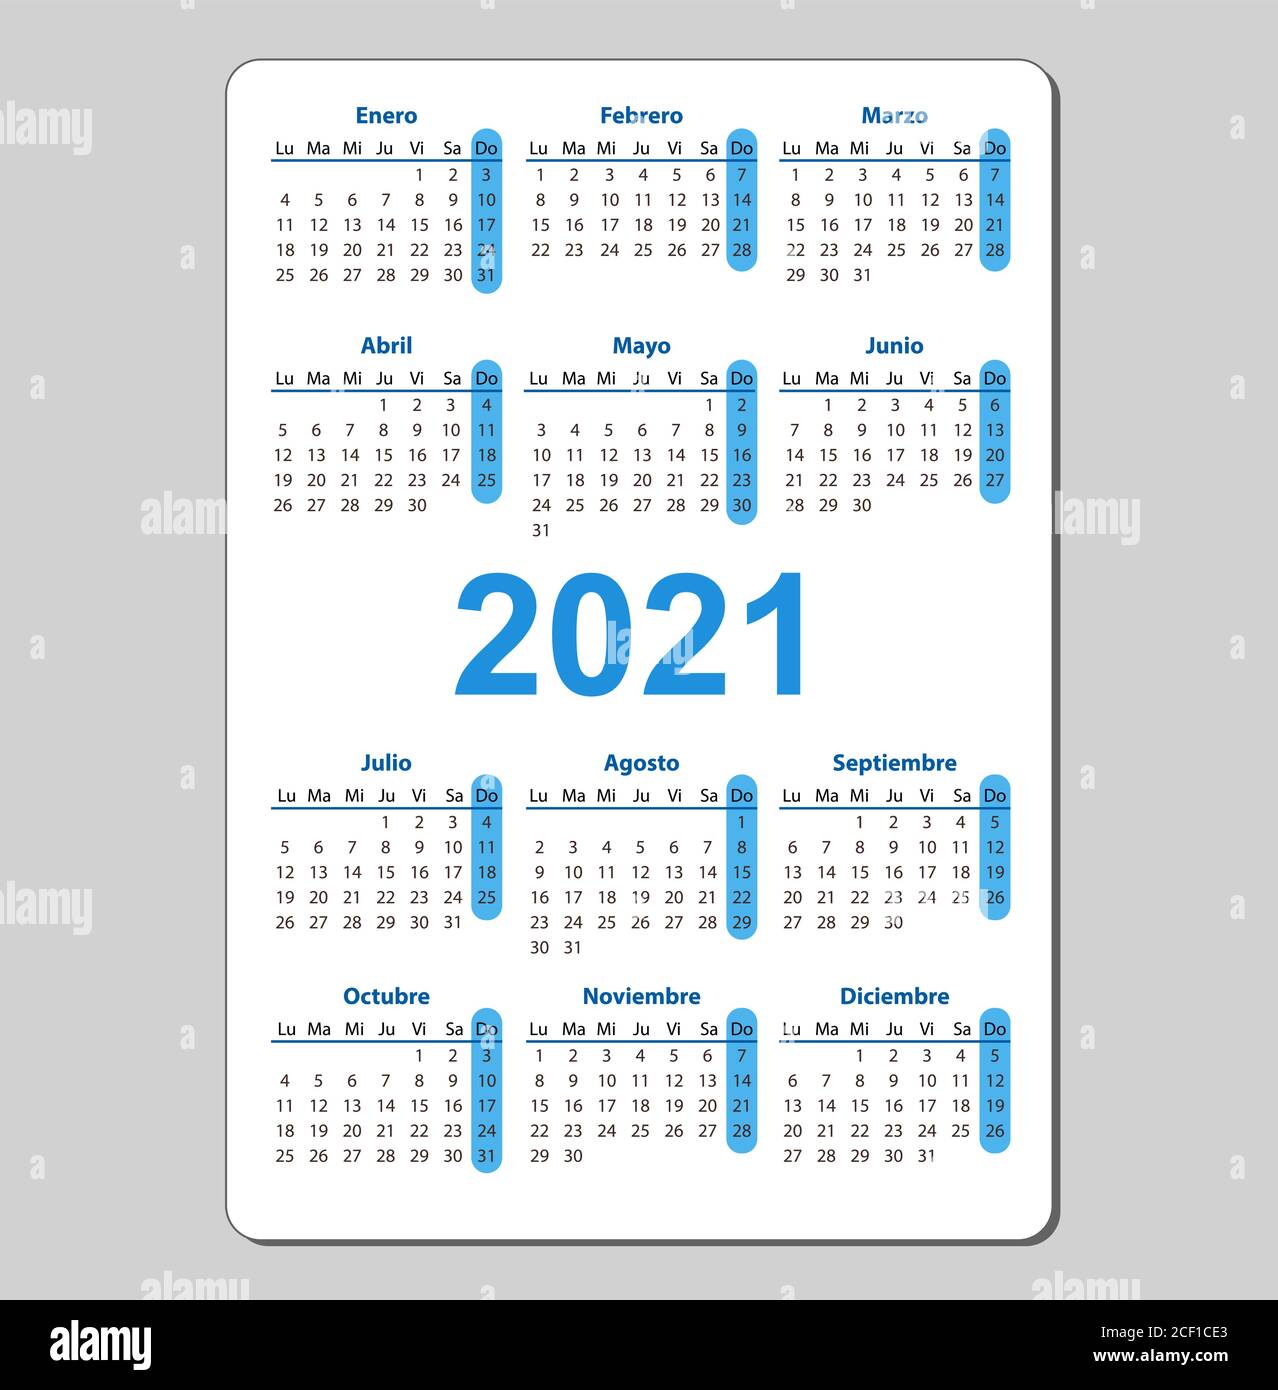 Calendario 2021 Castellano Imágenes Vectoriales De Stock Alamy 